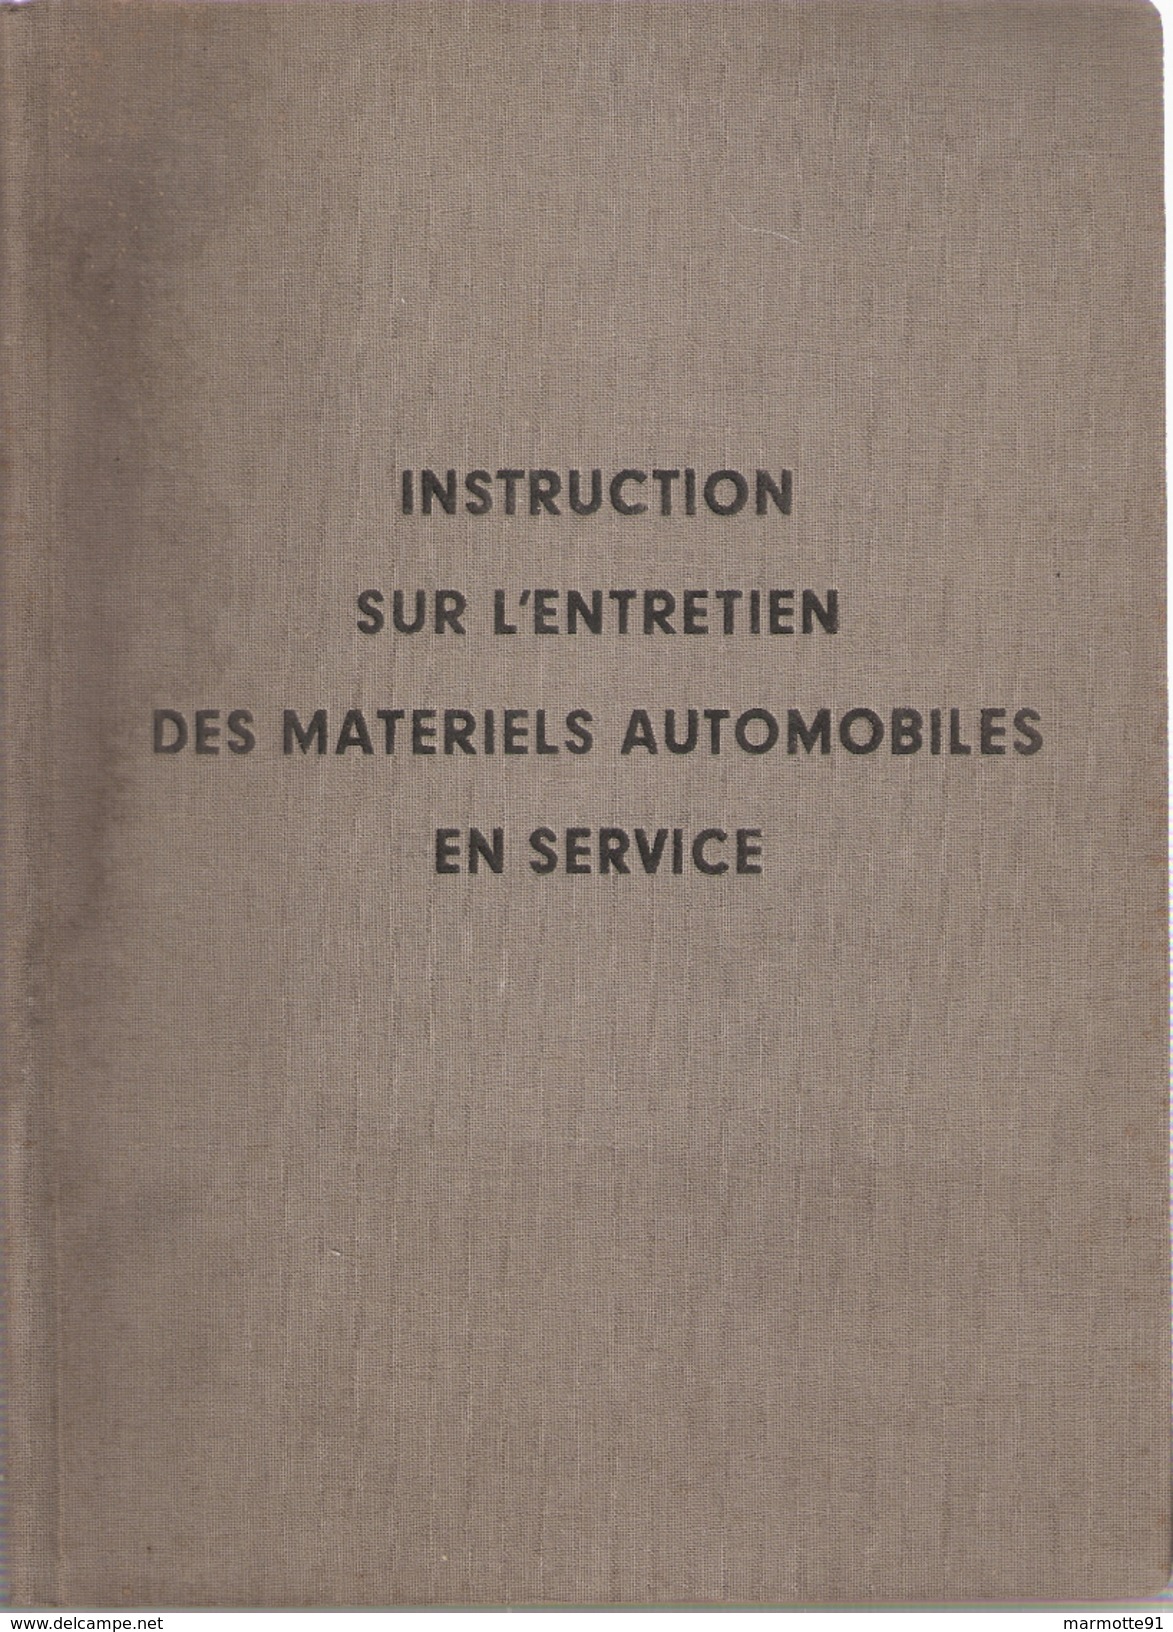 INSTRUCTION ENTRETIEN MATERIELS AUTOMOBILES EN SERVICE ARMEE FRANCAISE 1951 JEEP CAMION CHAR MOTO - Veicoli